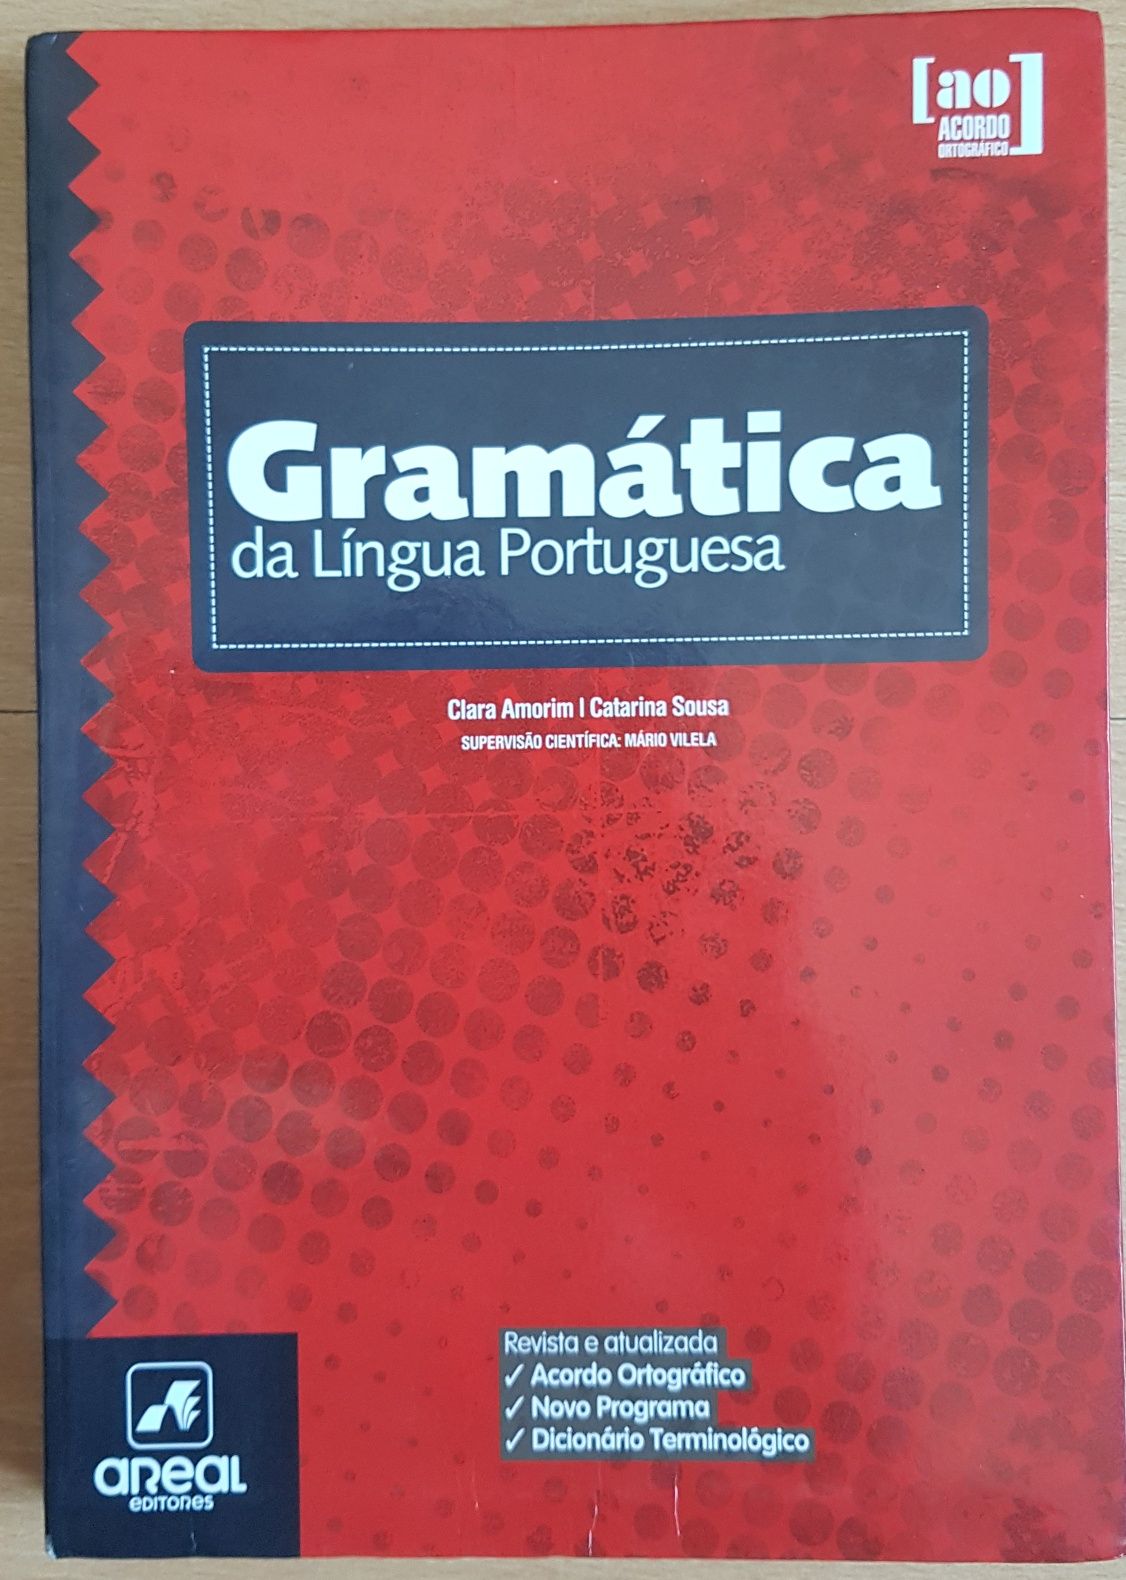 Gramática de Português